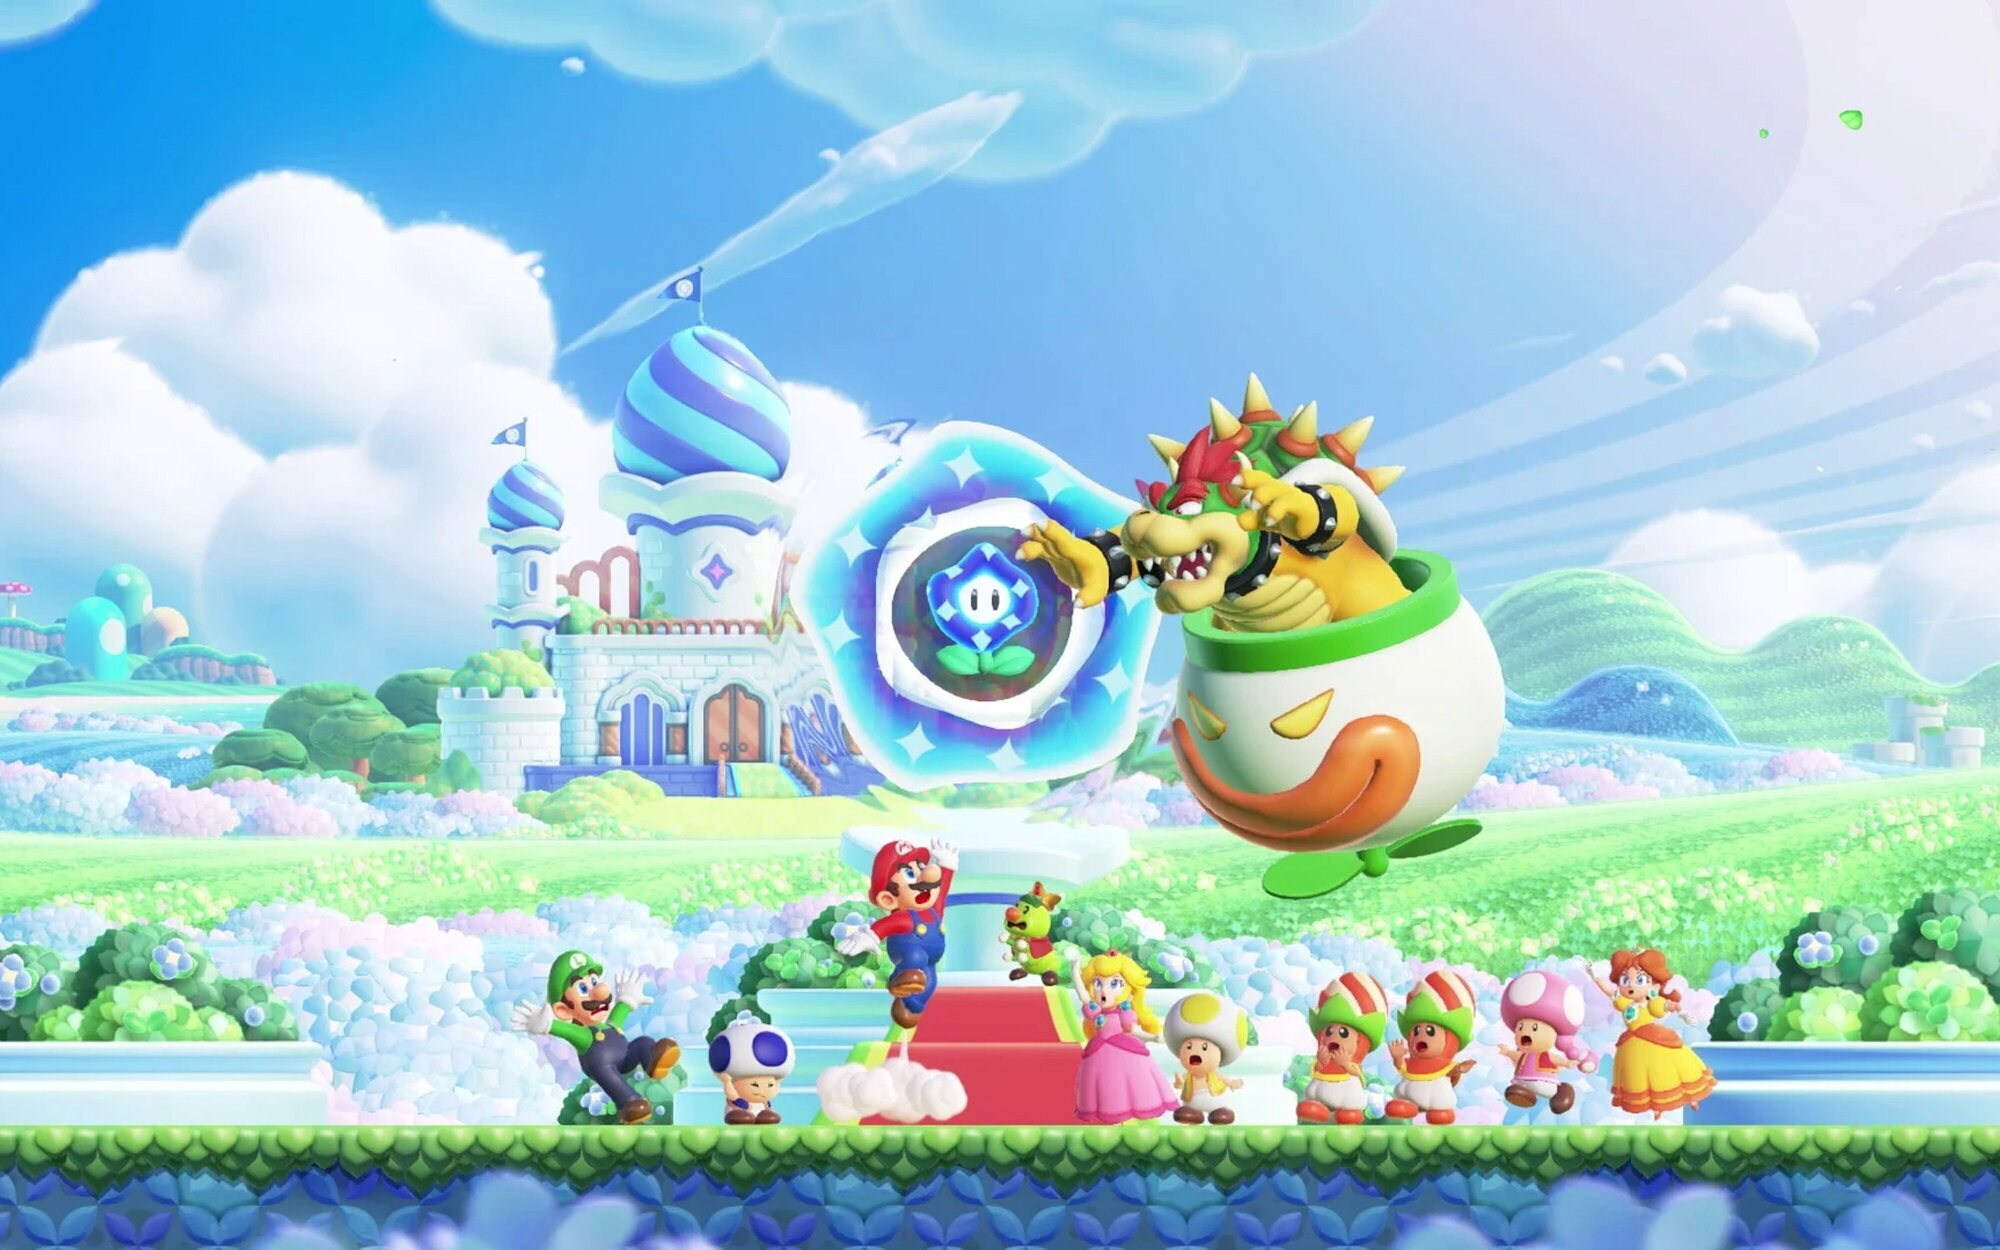 Impresiones de 'Super Mario Bros. Wonder', plataformas para flipar en colores